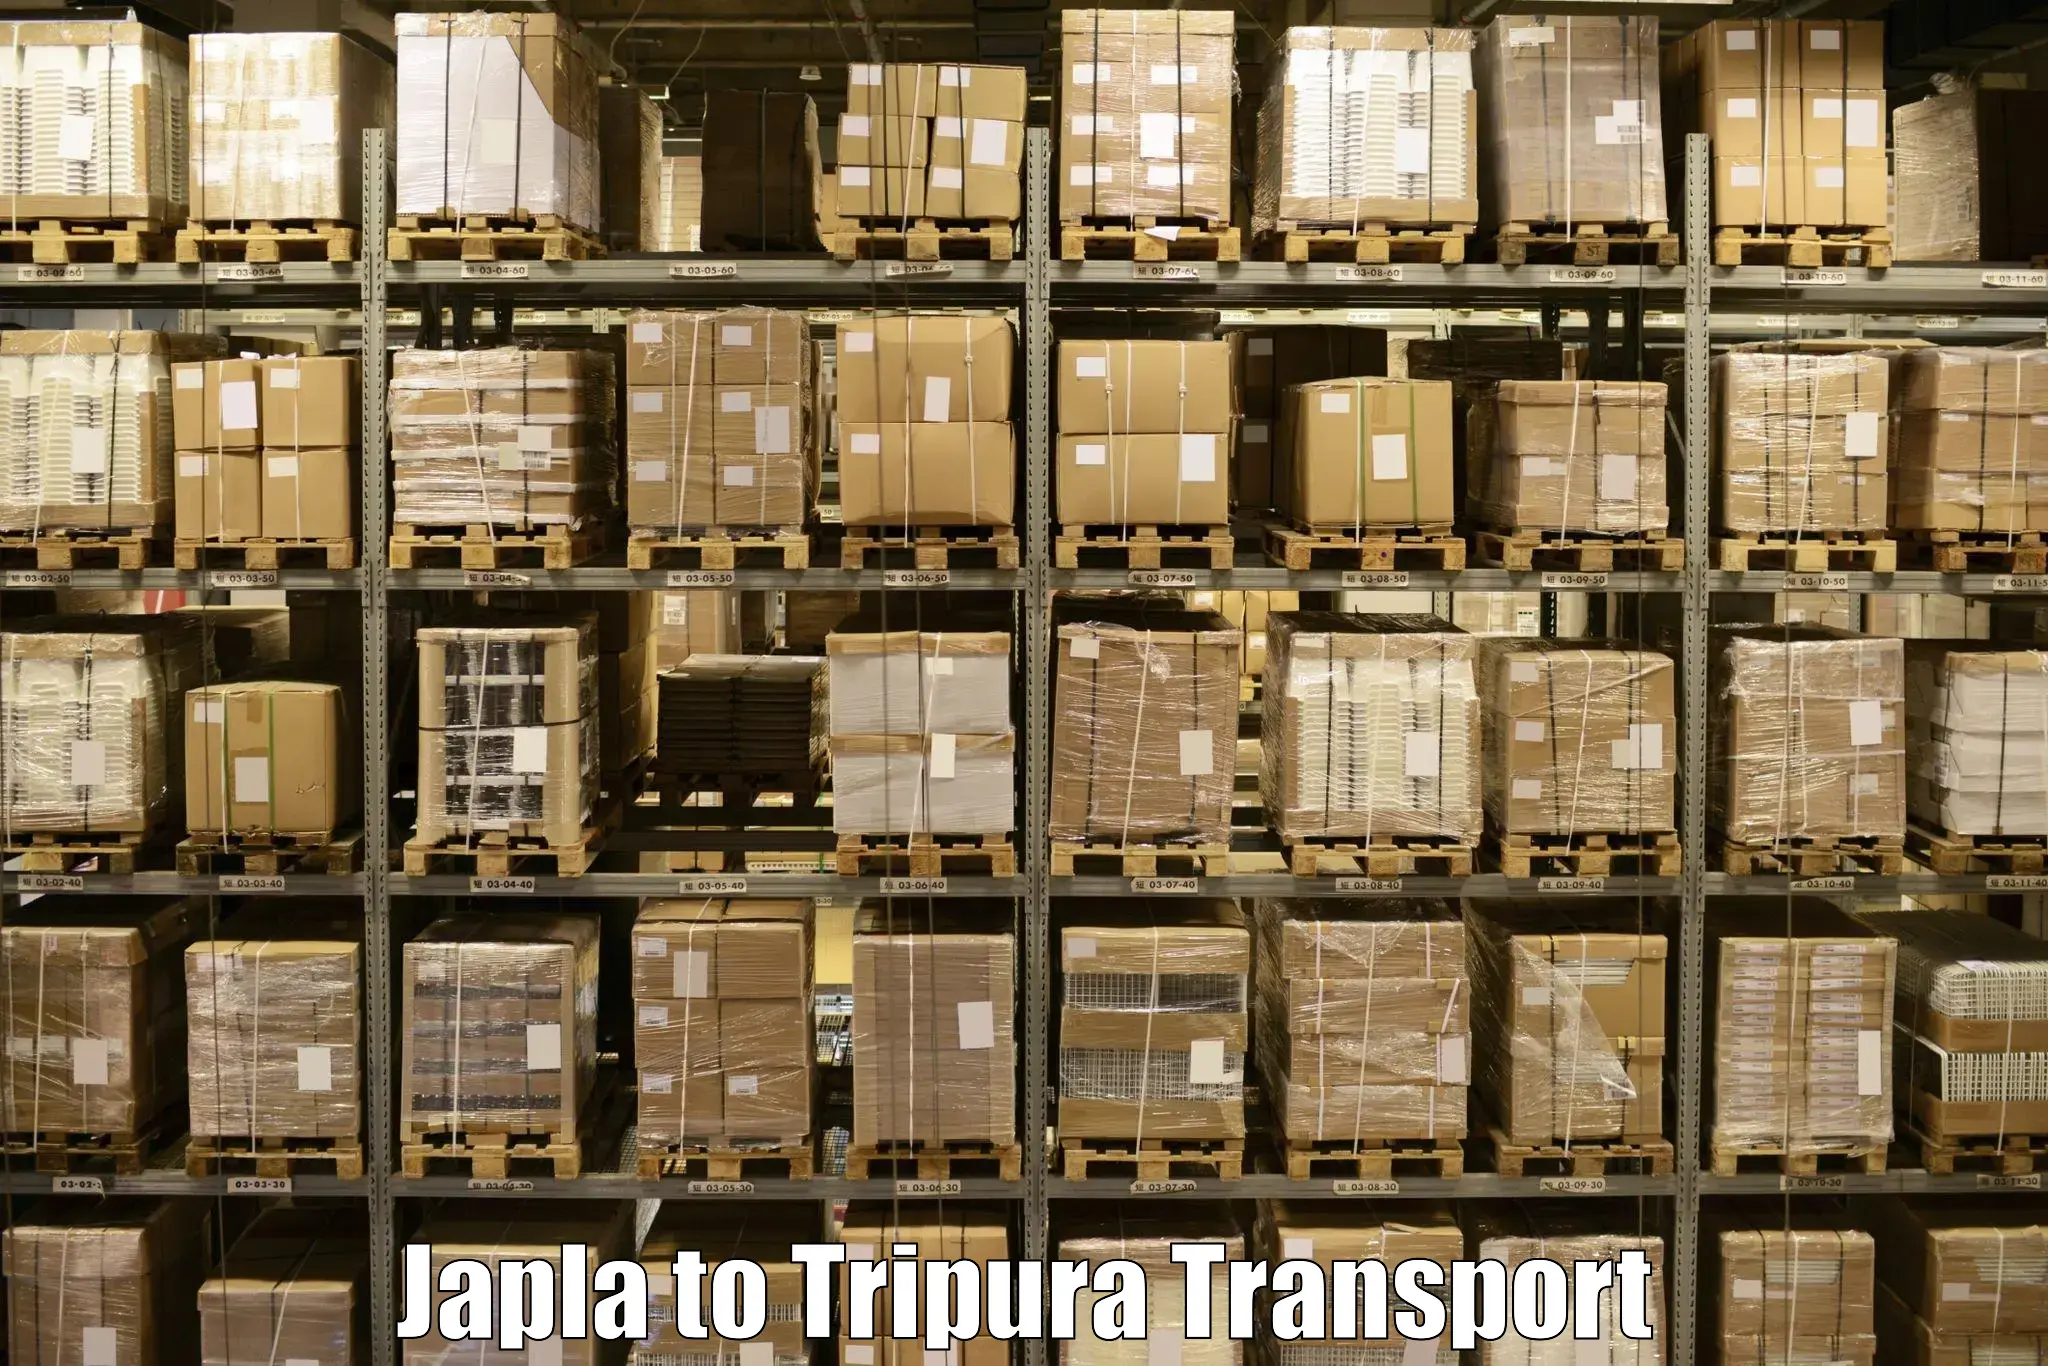 Shipping partner Japla to IIIT Agartala